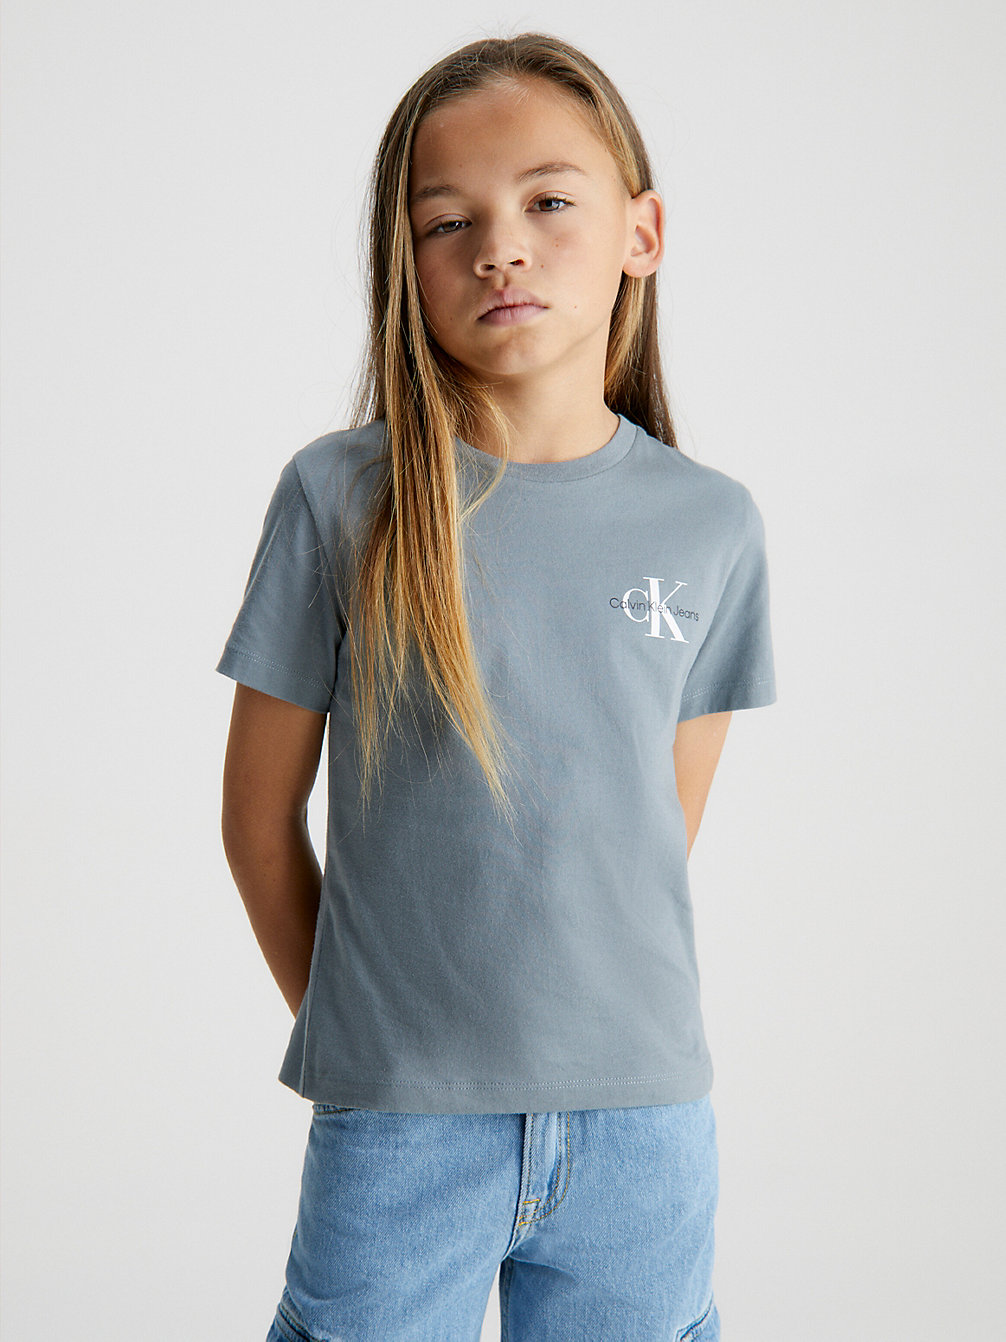 OVERCAST GREY T-Shirt Aus Bio-Baumwolle undefined Jungen Calvin Klein